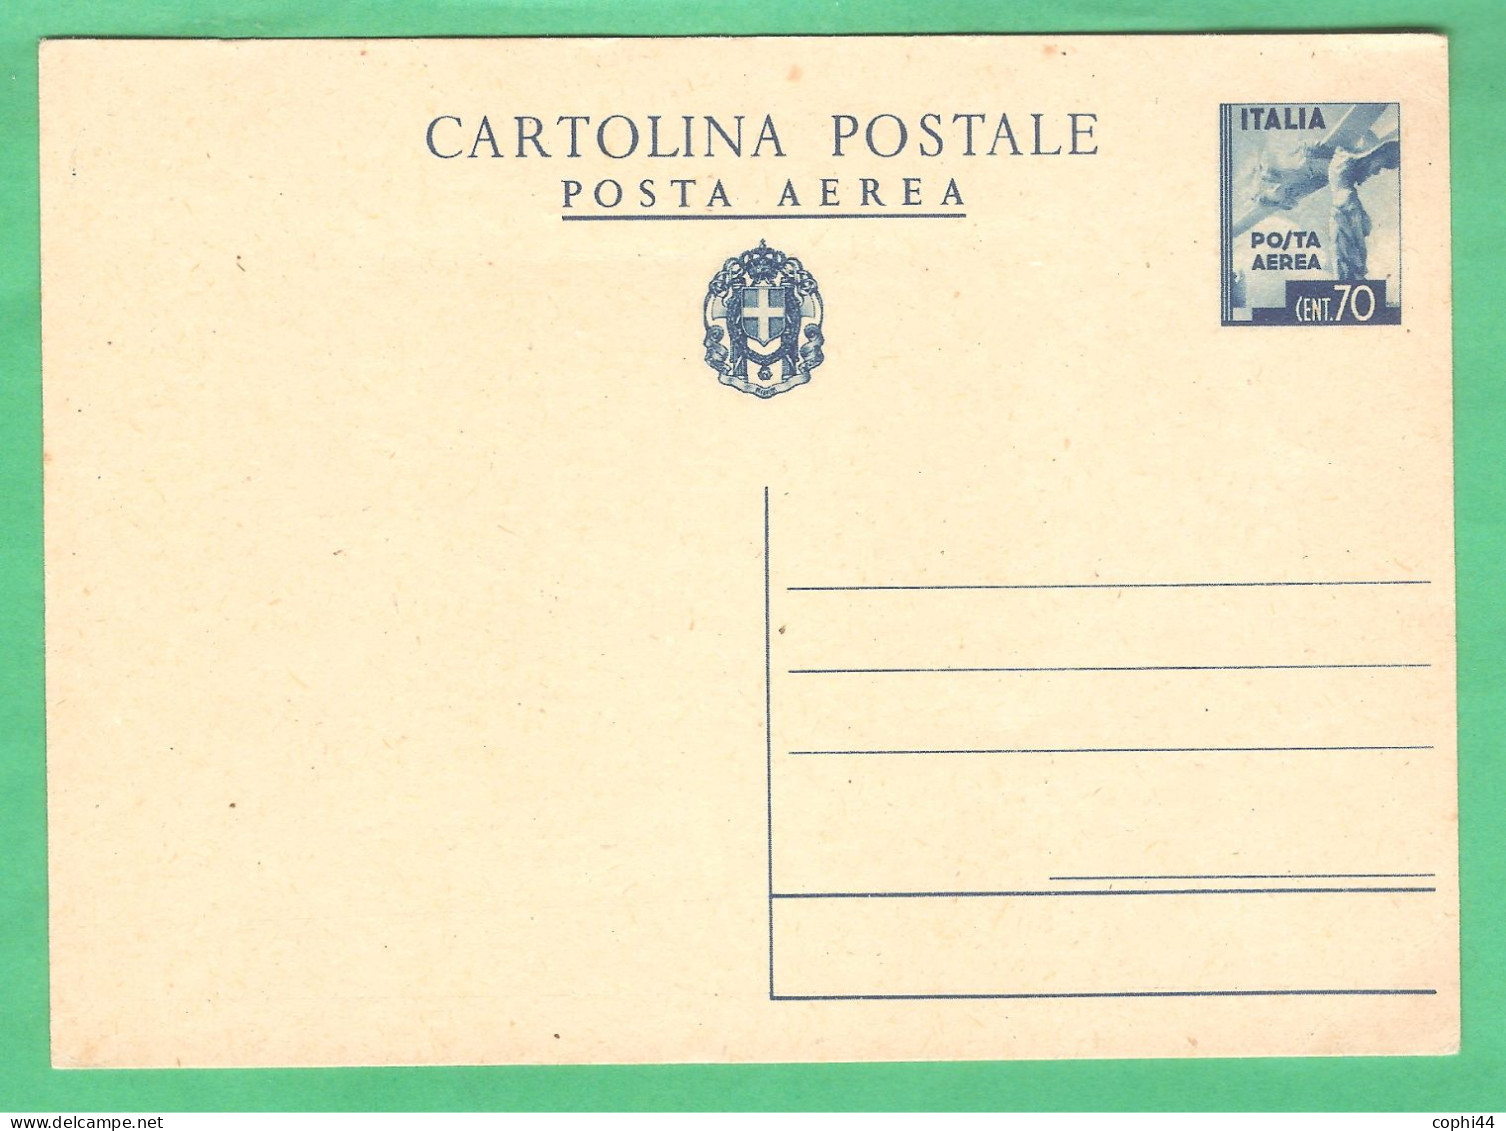 REGNO D'ITALIA 1943 CARTOLINA POSTALE VEIII POSTA AEREA 70 C Turchino (FILAGRANO C100) NUOVA - Ganzsachen